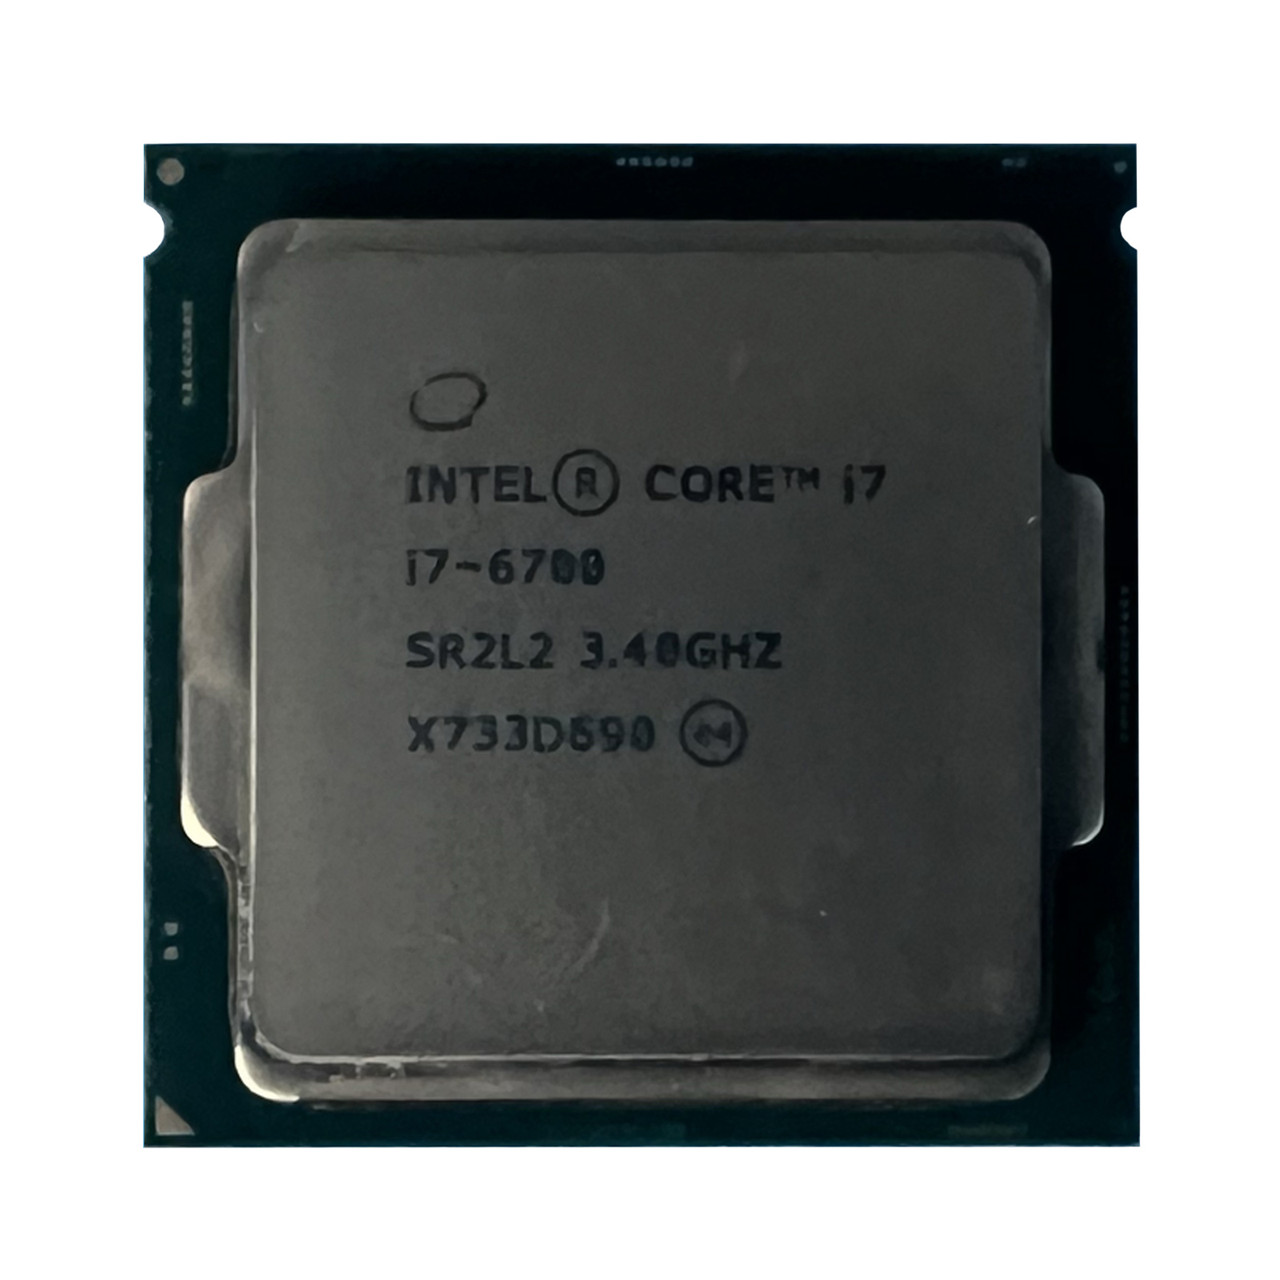 Intel SR2L2 | Intel i7-6700 QC 3.40Ghz 8MB 8GTs Processor